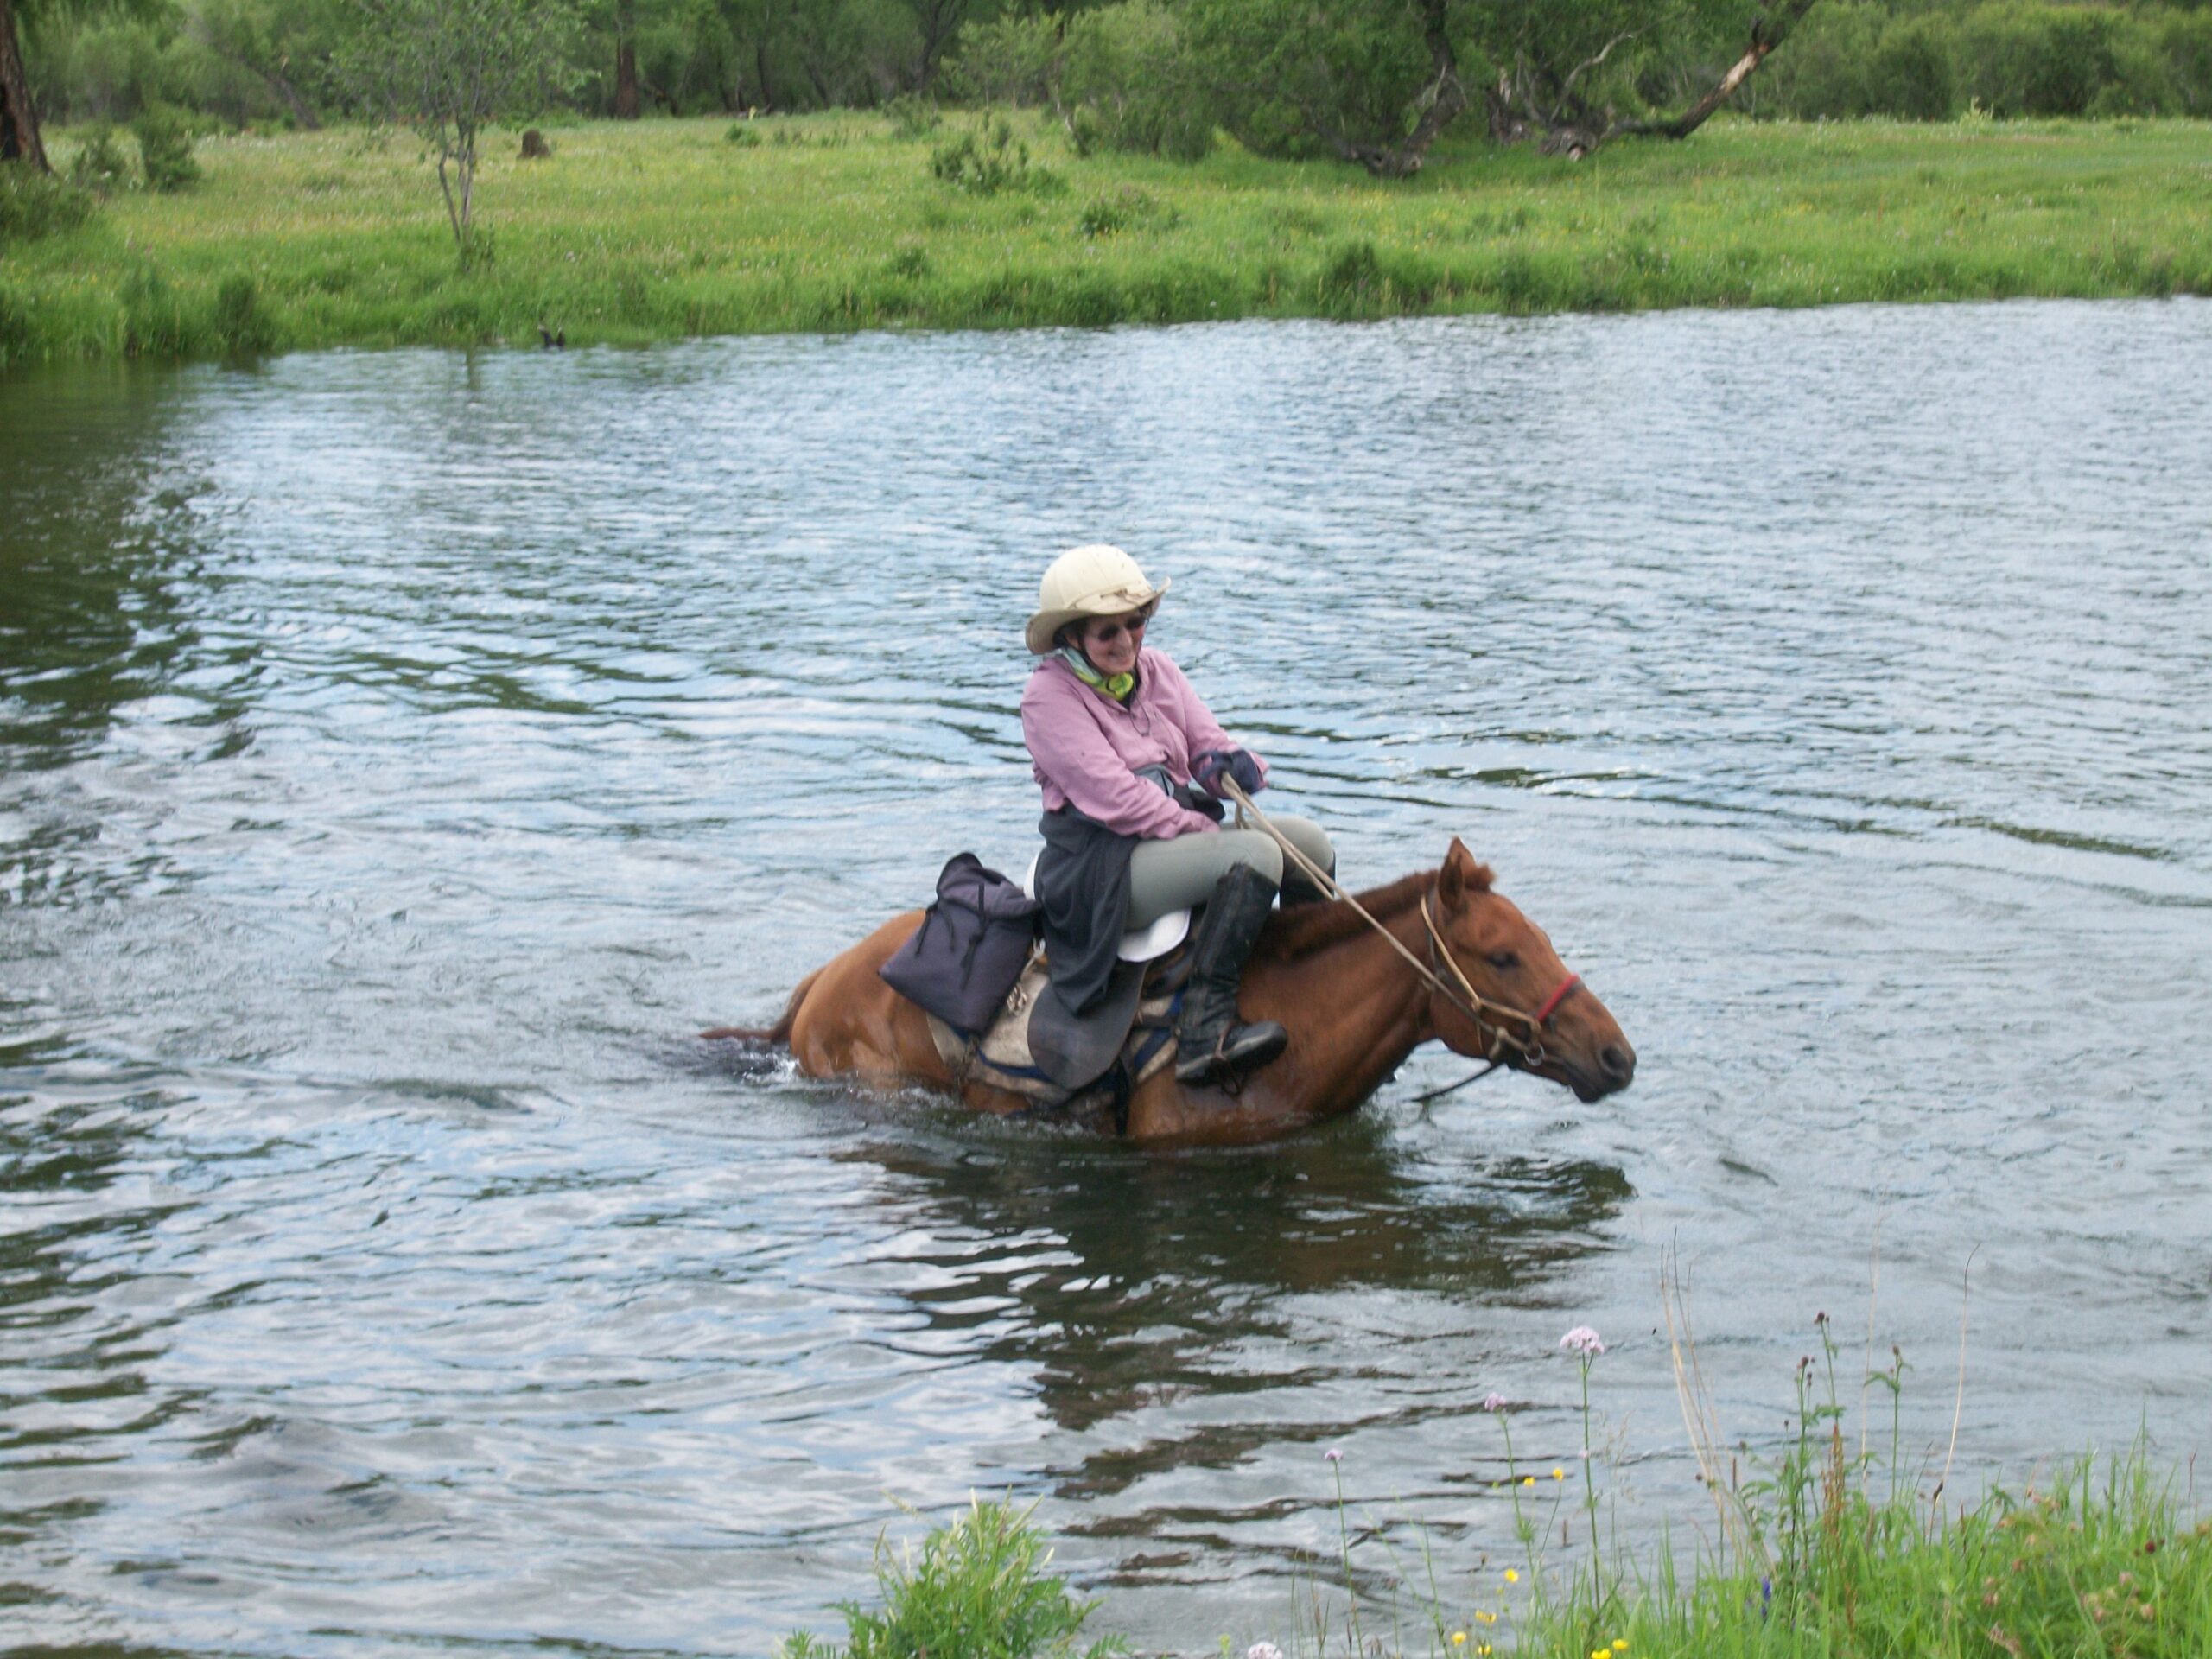 Paardrijvakantie in Mongolië - Vakantie te paard / Reisbureau Perlan